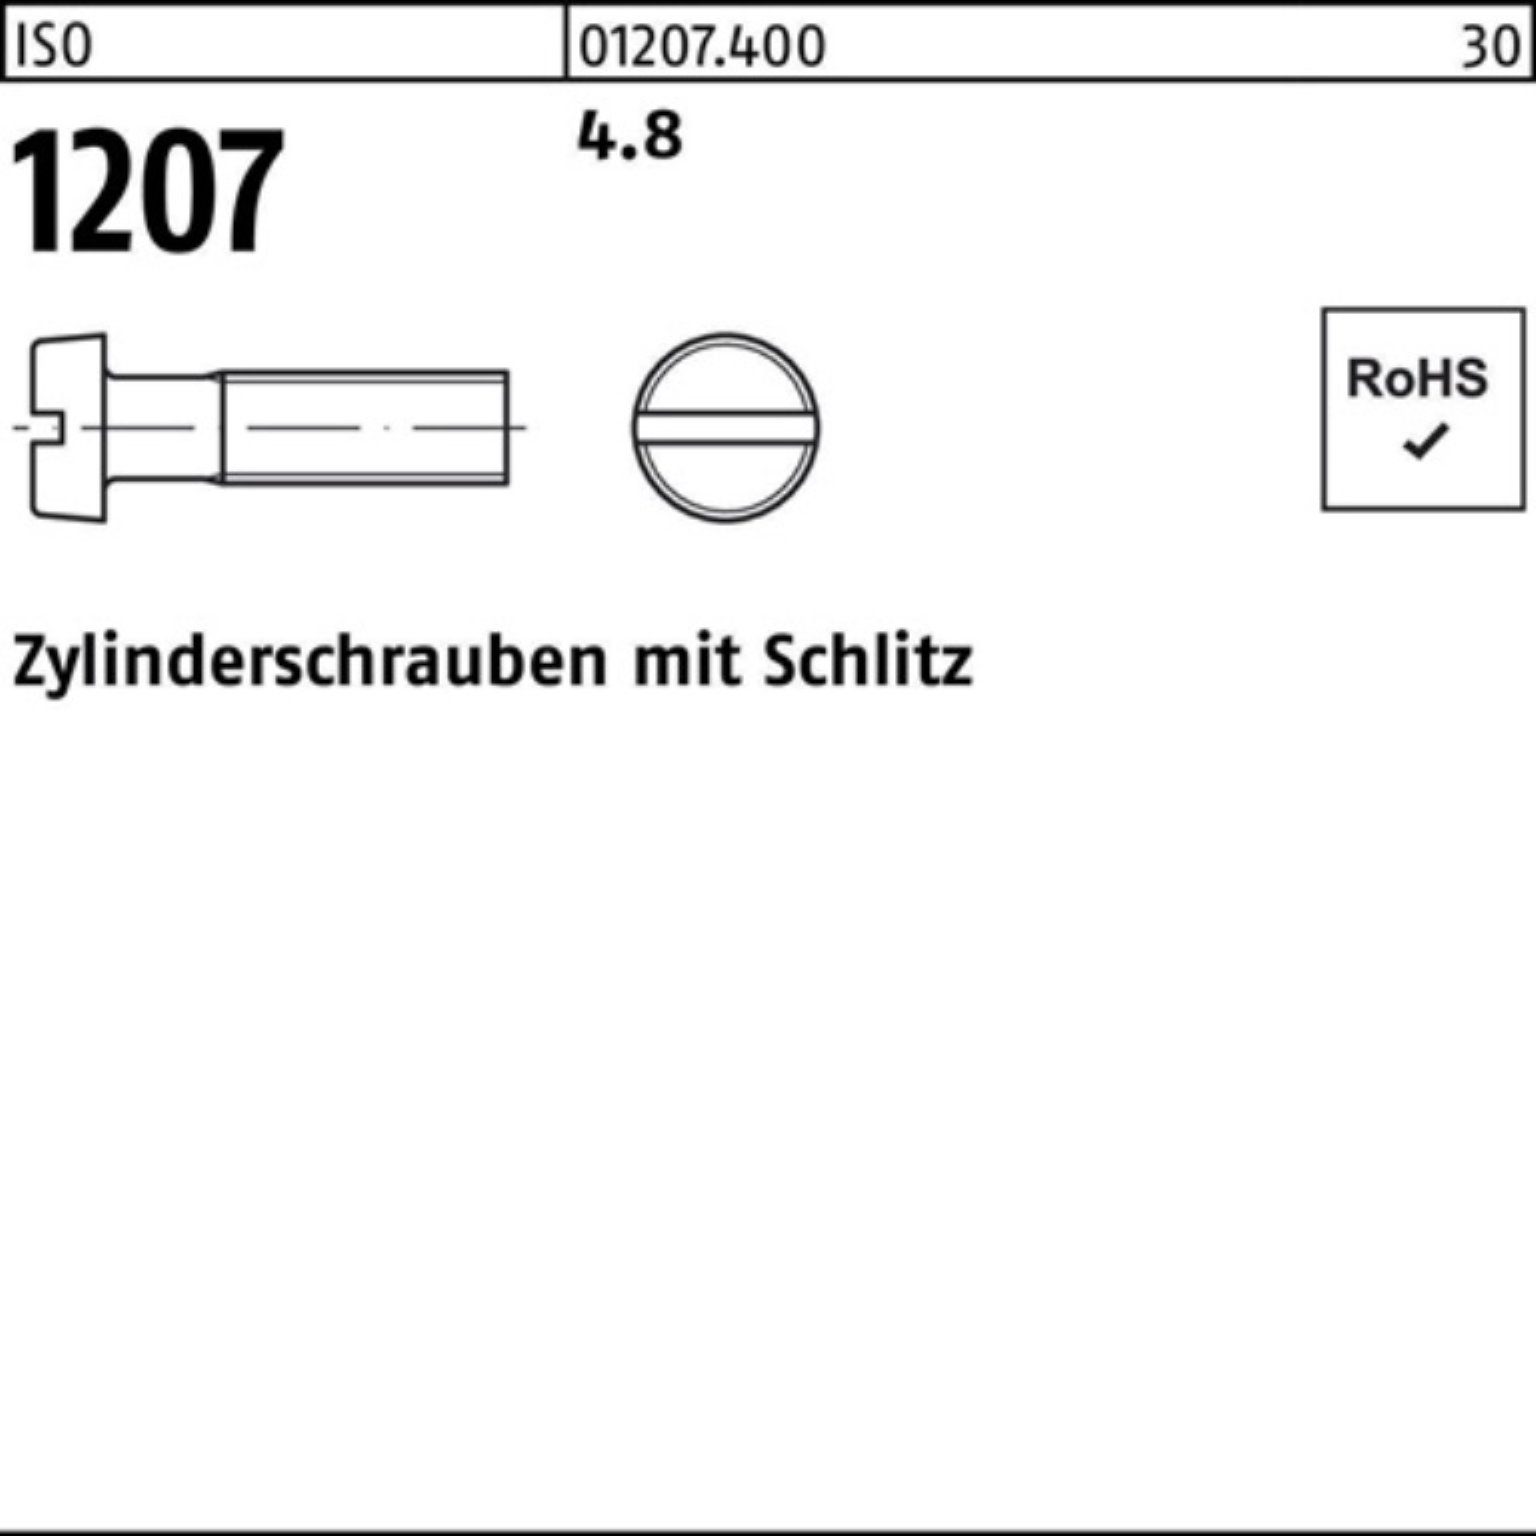 Reyher Zylinderschraube 200er Zylinderschraube 1207 Stück 200 30 M8x 4.8 ISO ISO Schlitz Pack